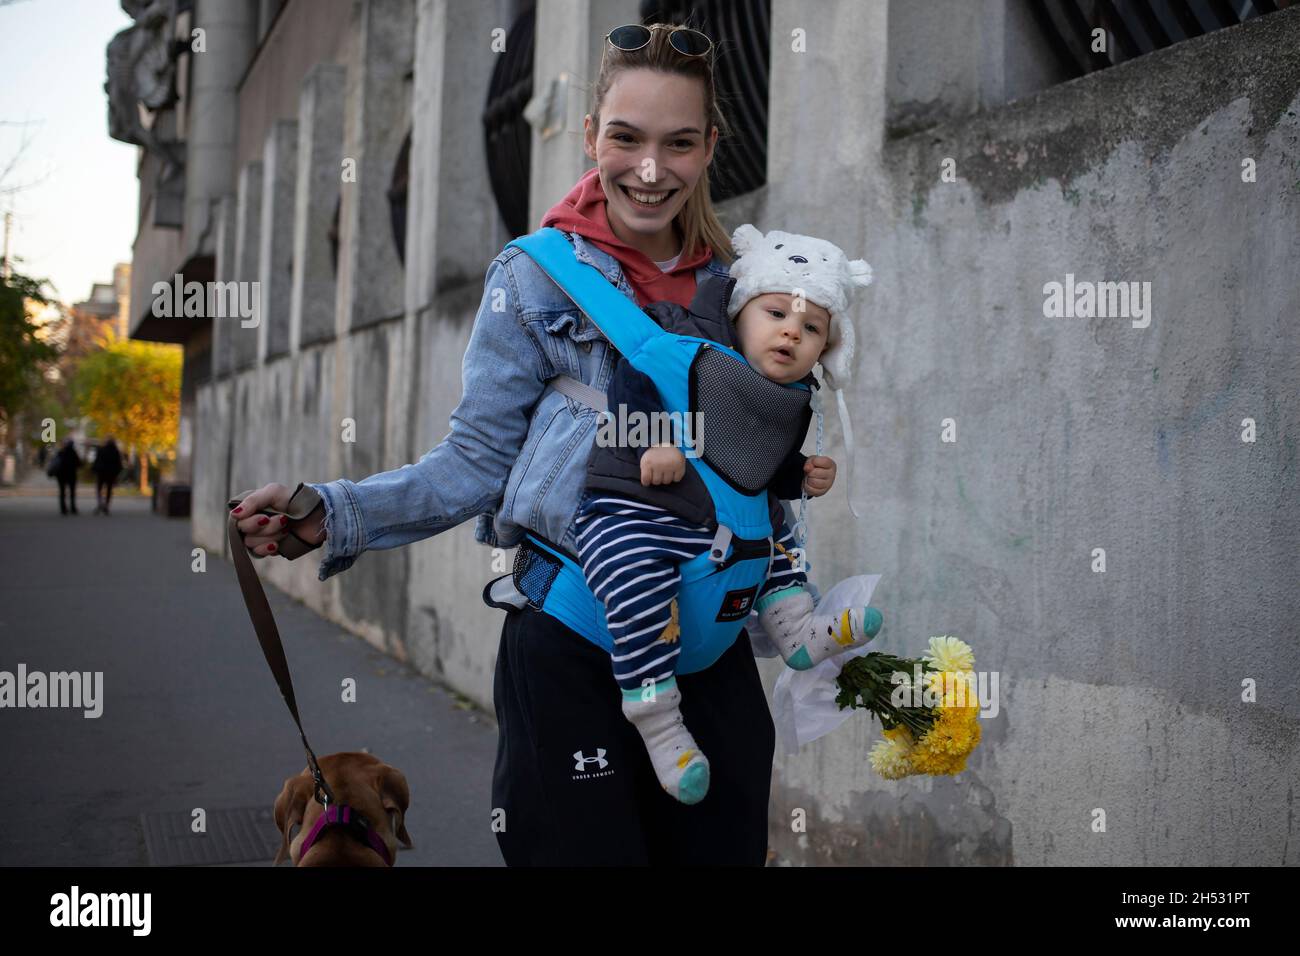 Belgrad, 31. Oktober 2021: Eine junge Frau mit einem Baby in einem Träger und einem breiten Lächeln geht mit einem Strauß gelber Blumen den Hund die Straße entlang Stockfoto